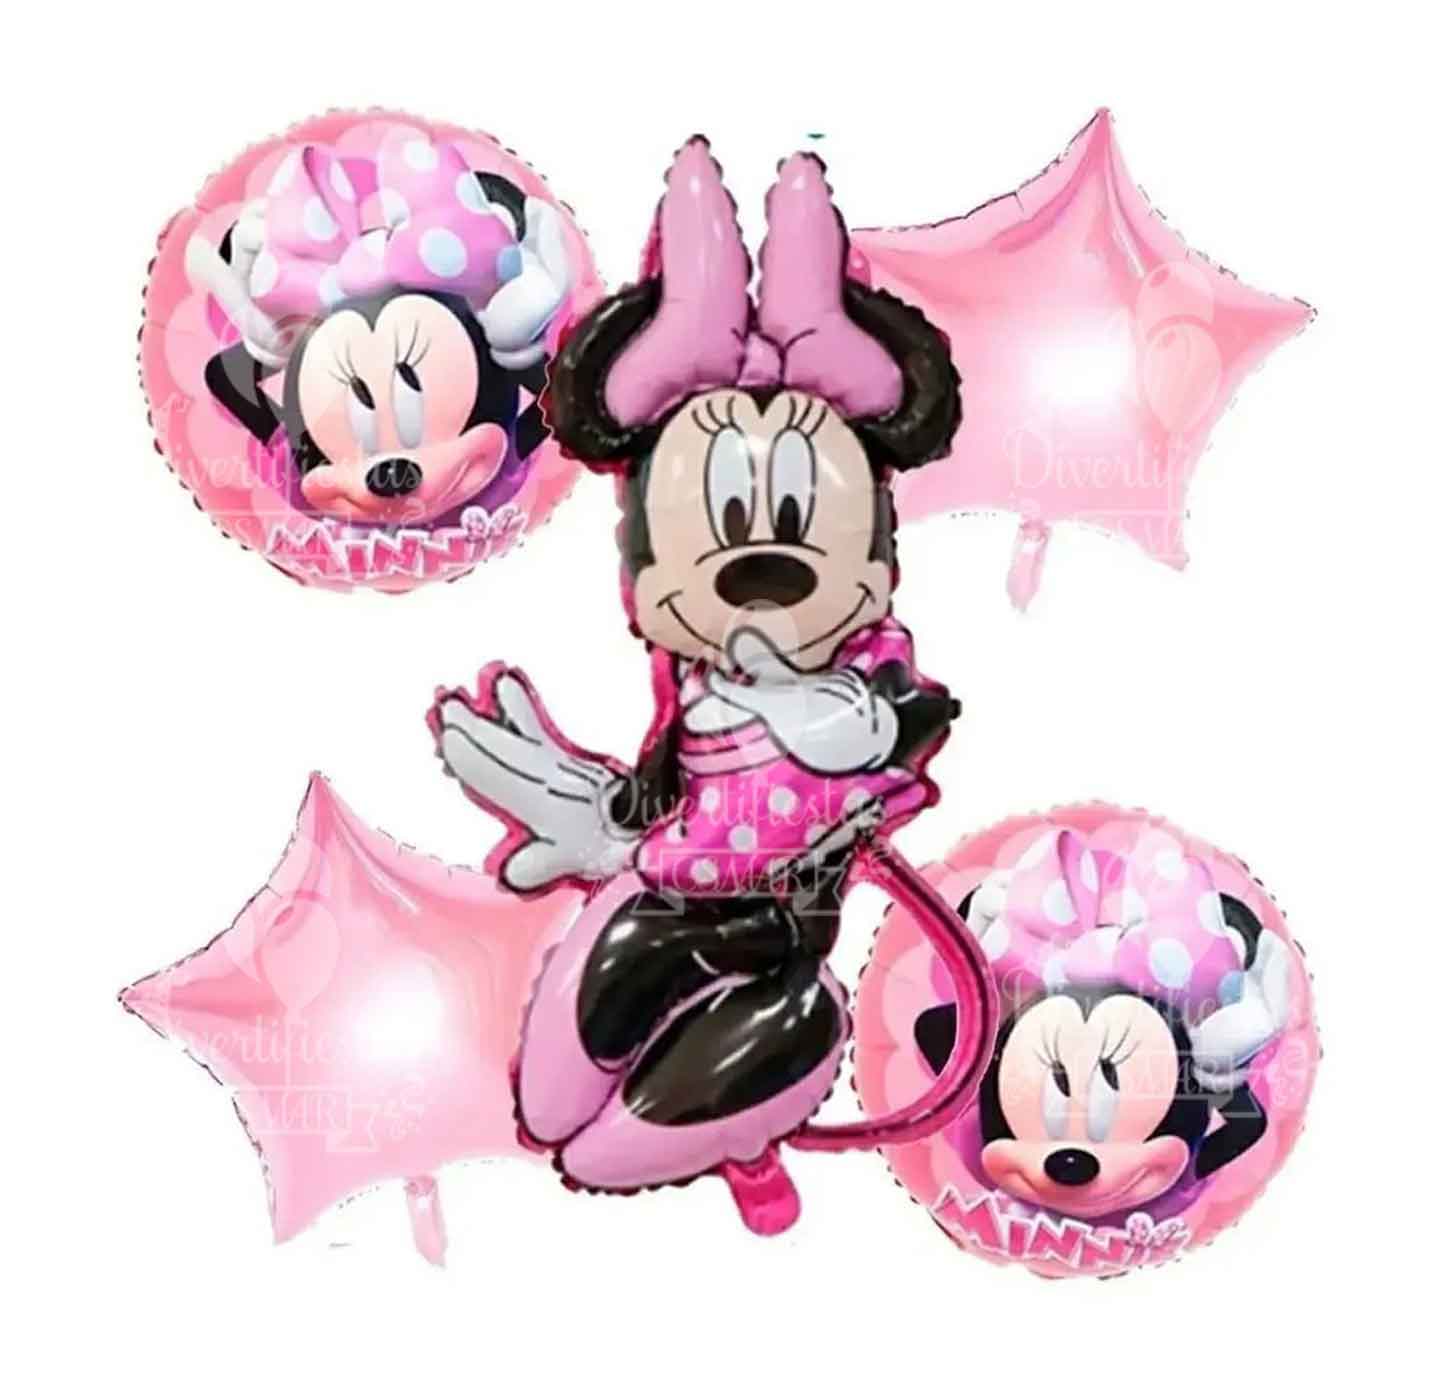 Set de 5 globos metalicos Minnie figura, venta minima 1 set